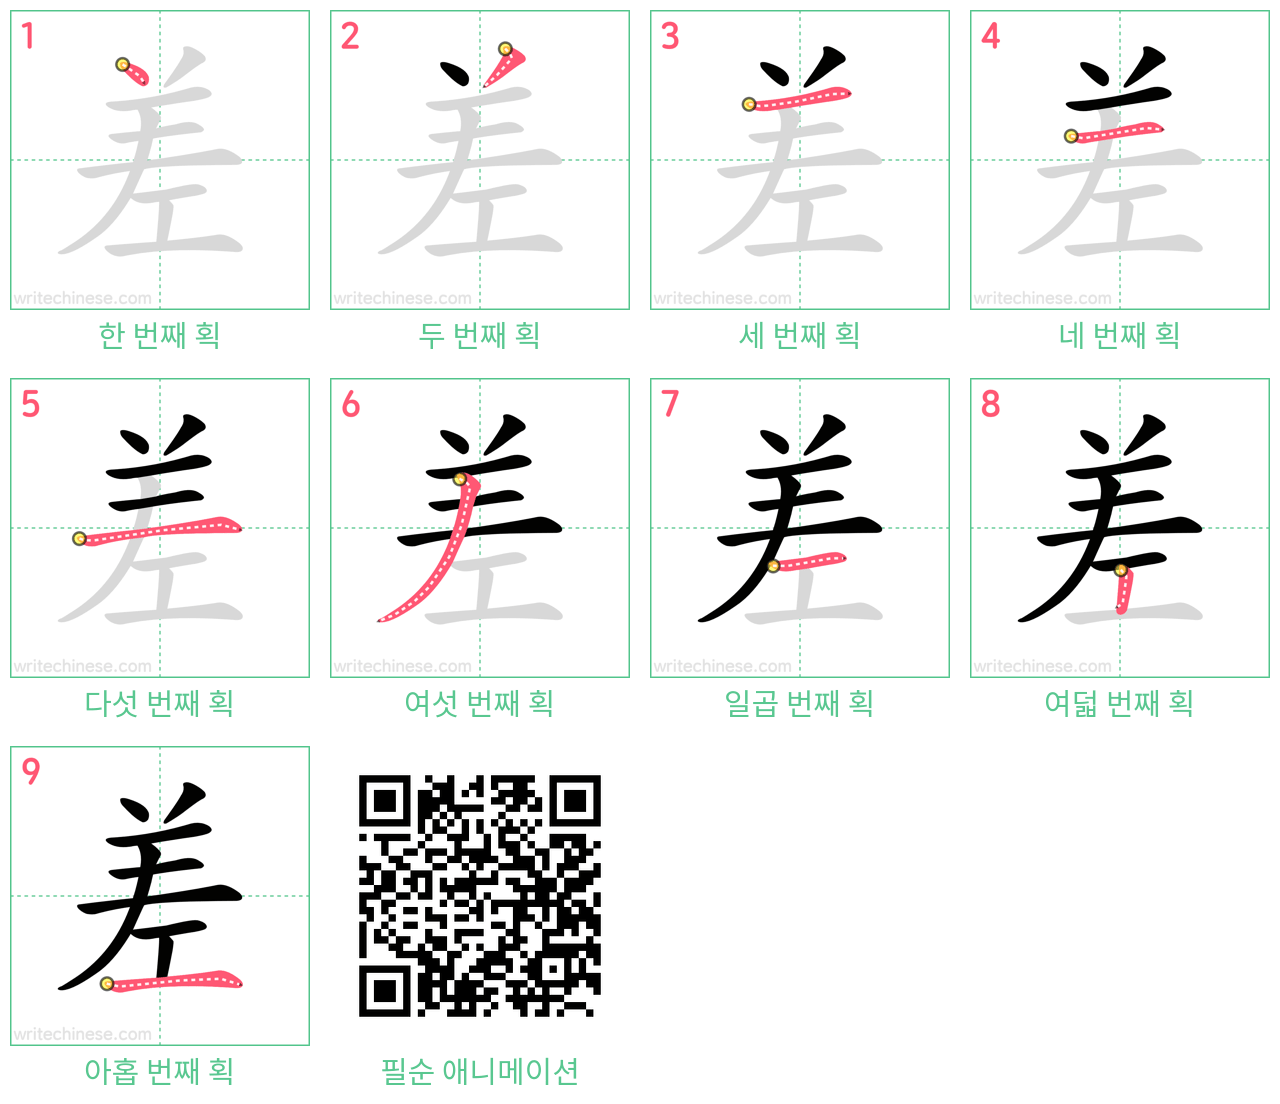 差 step-by-step stroke order diagrams